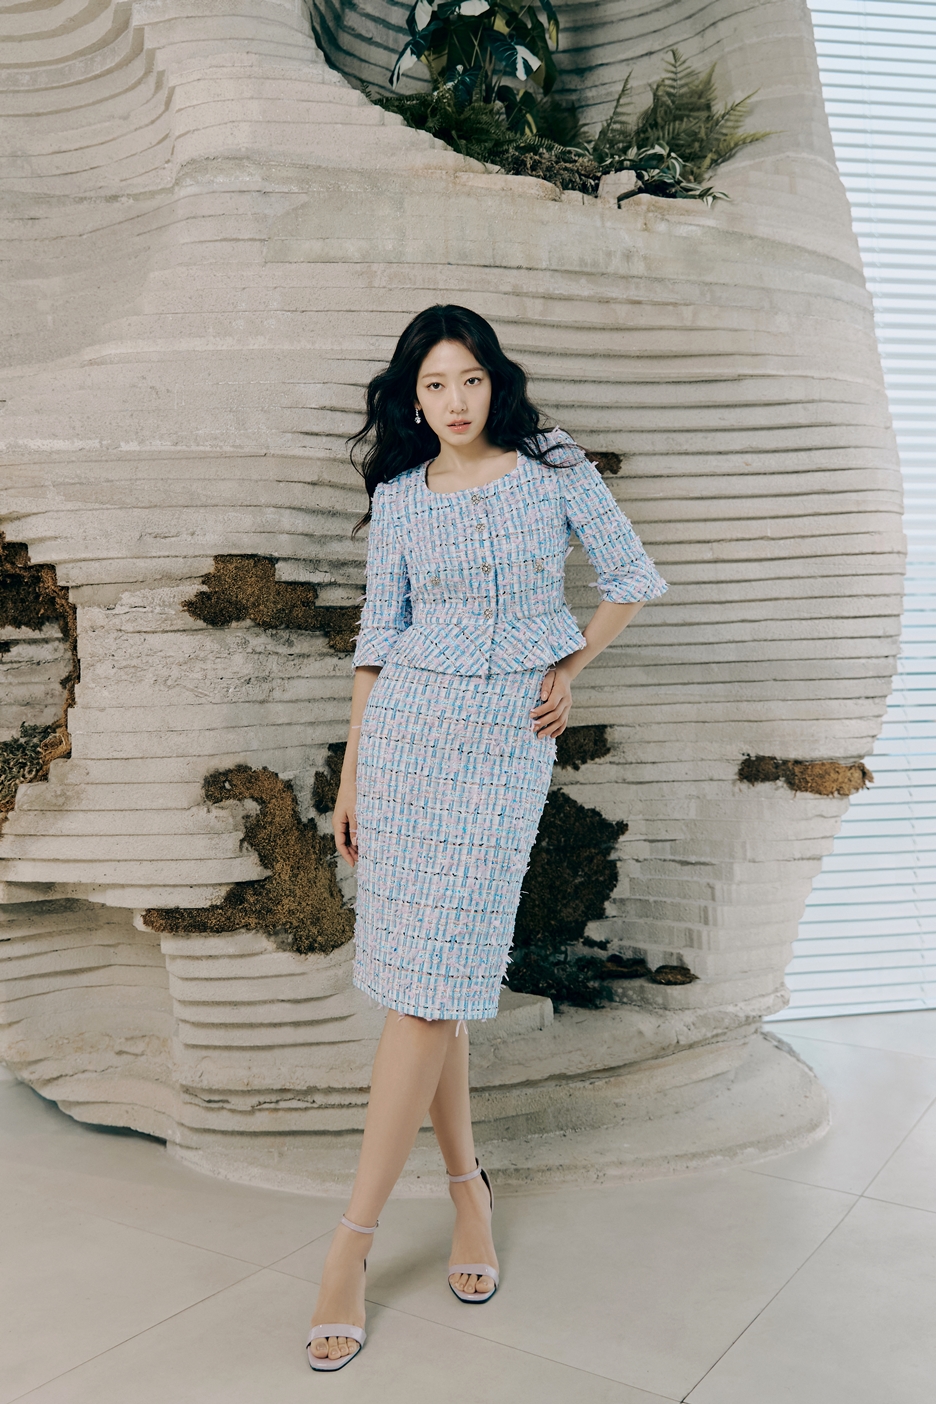 모조에스핀 24 여름 캠페인 박신혜 화보 패션 자켓 원피스 셋업 여자 여름 오피스룩 코디